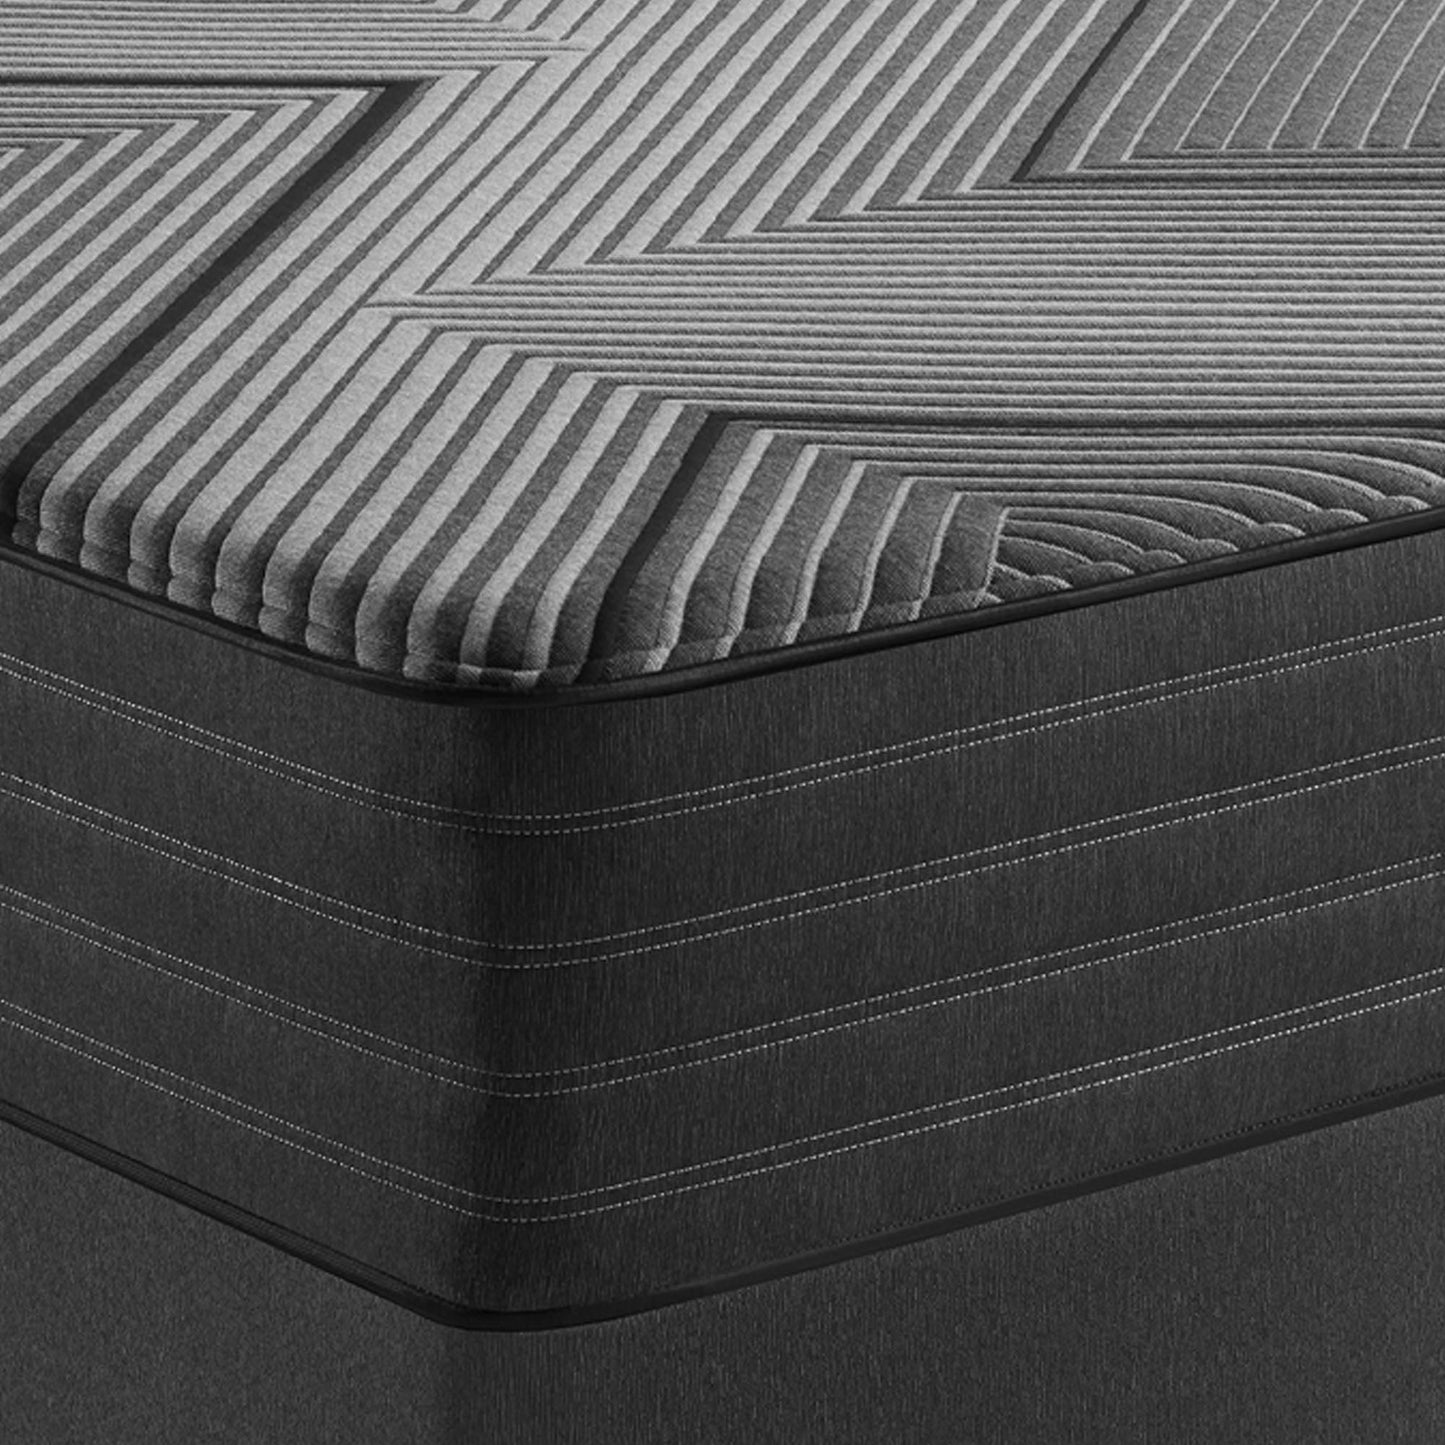 Beautyrest Black Hybrid L-Class Medium Mattress Corner Detail